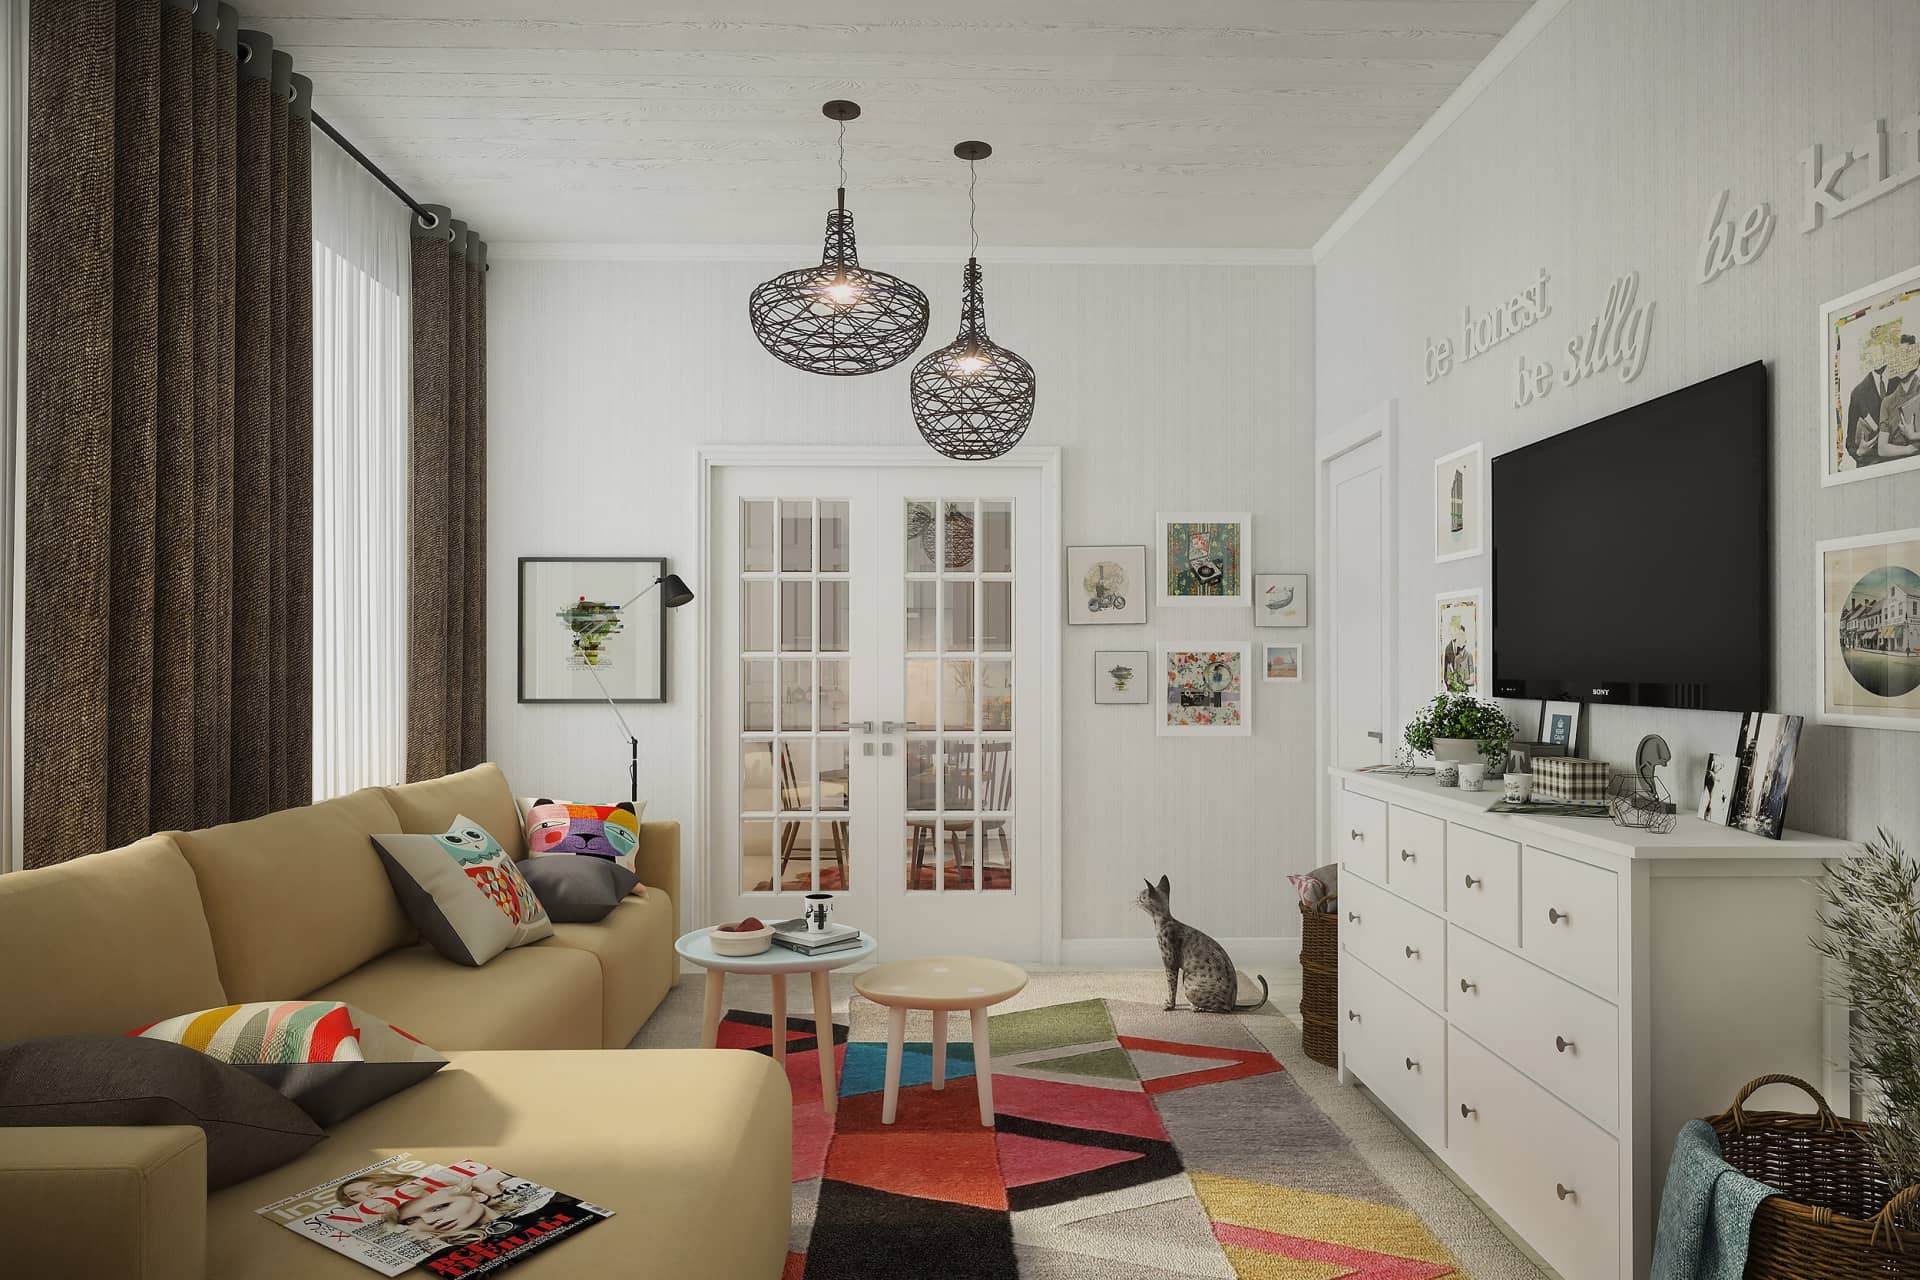 Шведский стиль в интерьере: примеры дизайна квартиры и дома, кухни, мебель, отделка и аксессуары